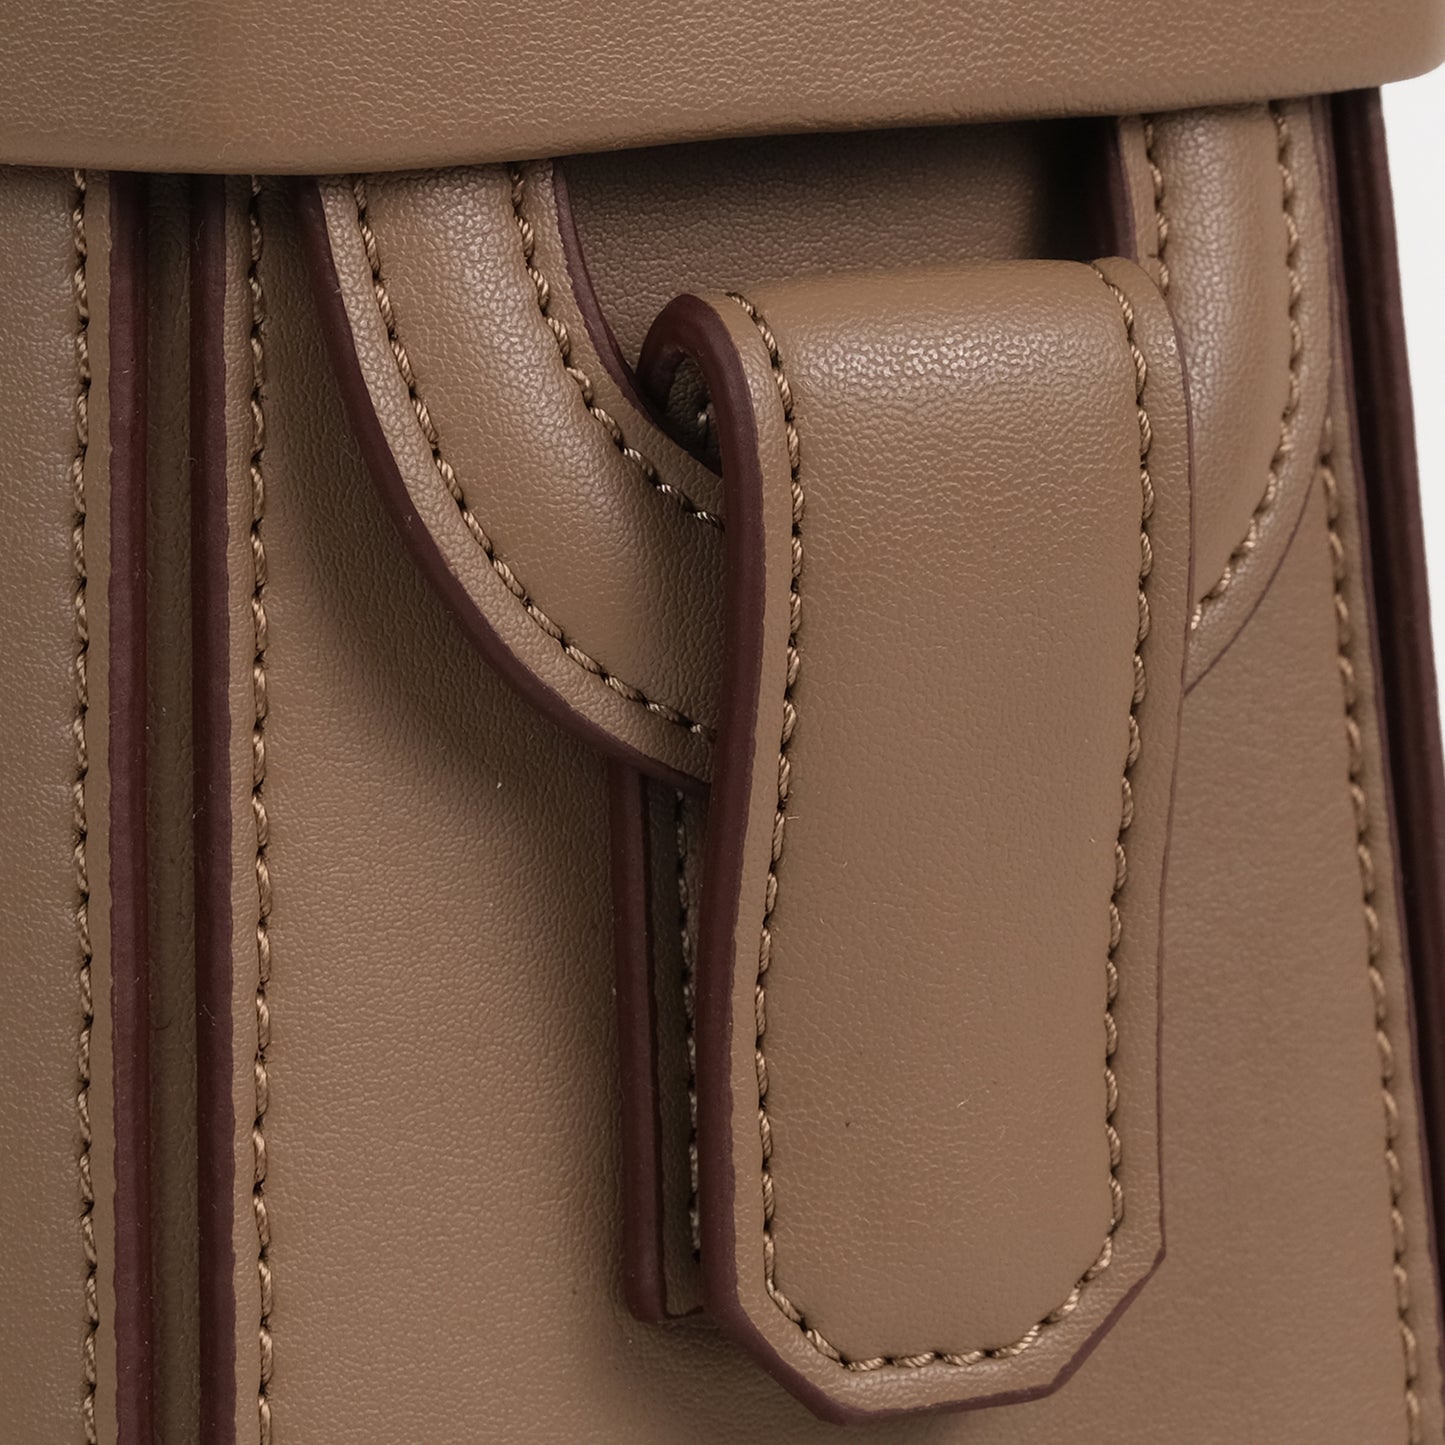 ELIF Olive Leather Leather Hexagon Bag Mink